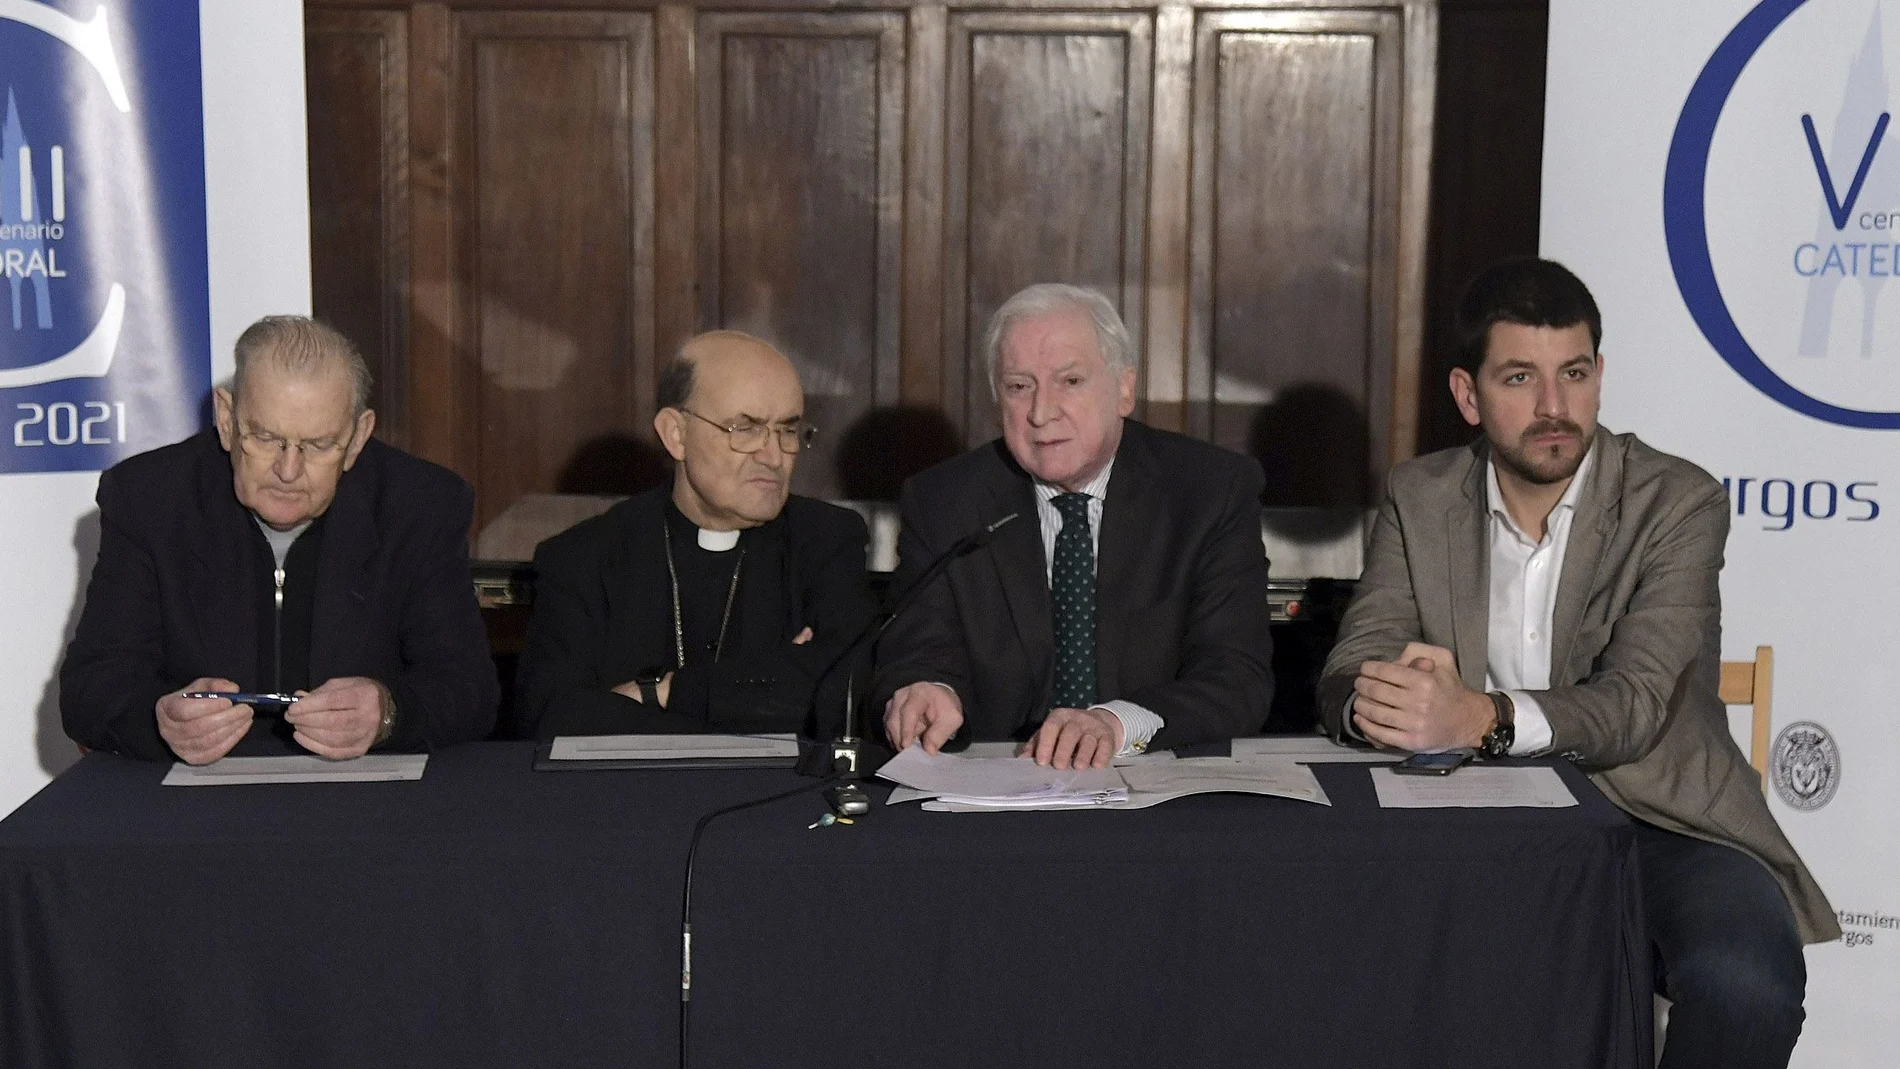 Méndez Pozo presenta la programación de la Fundación del VIII Centenario de la Catedral para 2020 junto a Fidel Herráez y David Jurado, entre otros